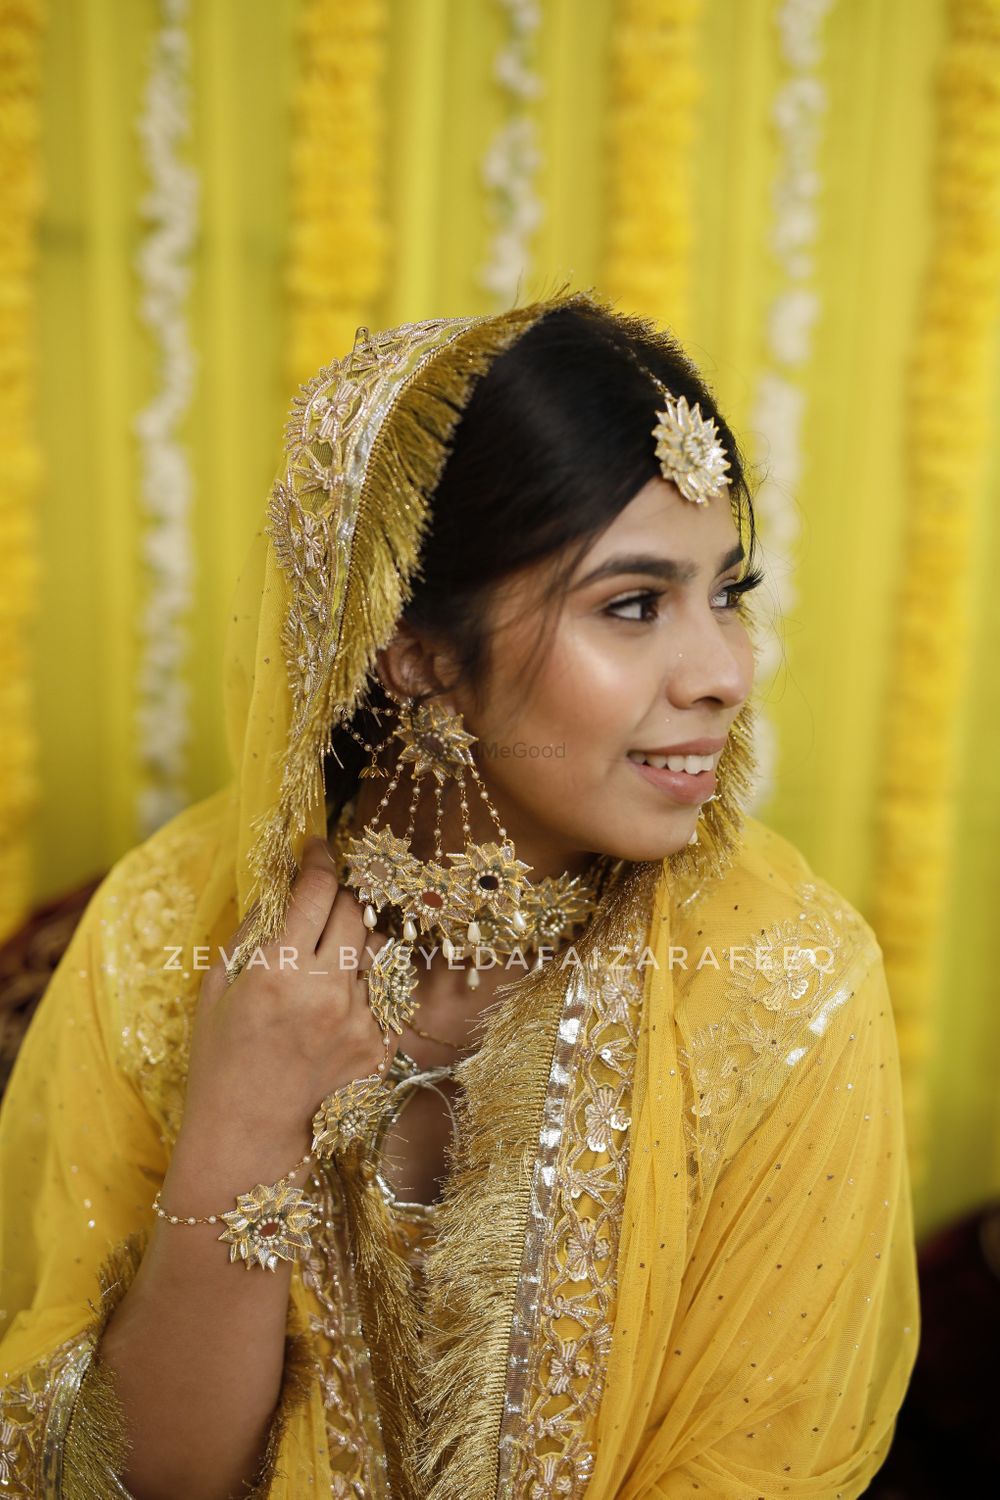 Photo From ZEVAR BRIDES - By Zevar by Syeda Faiza Rafeeq